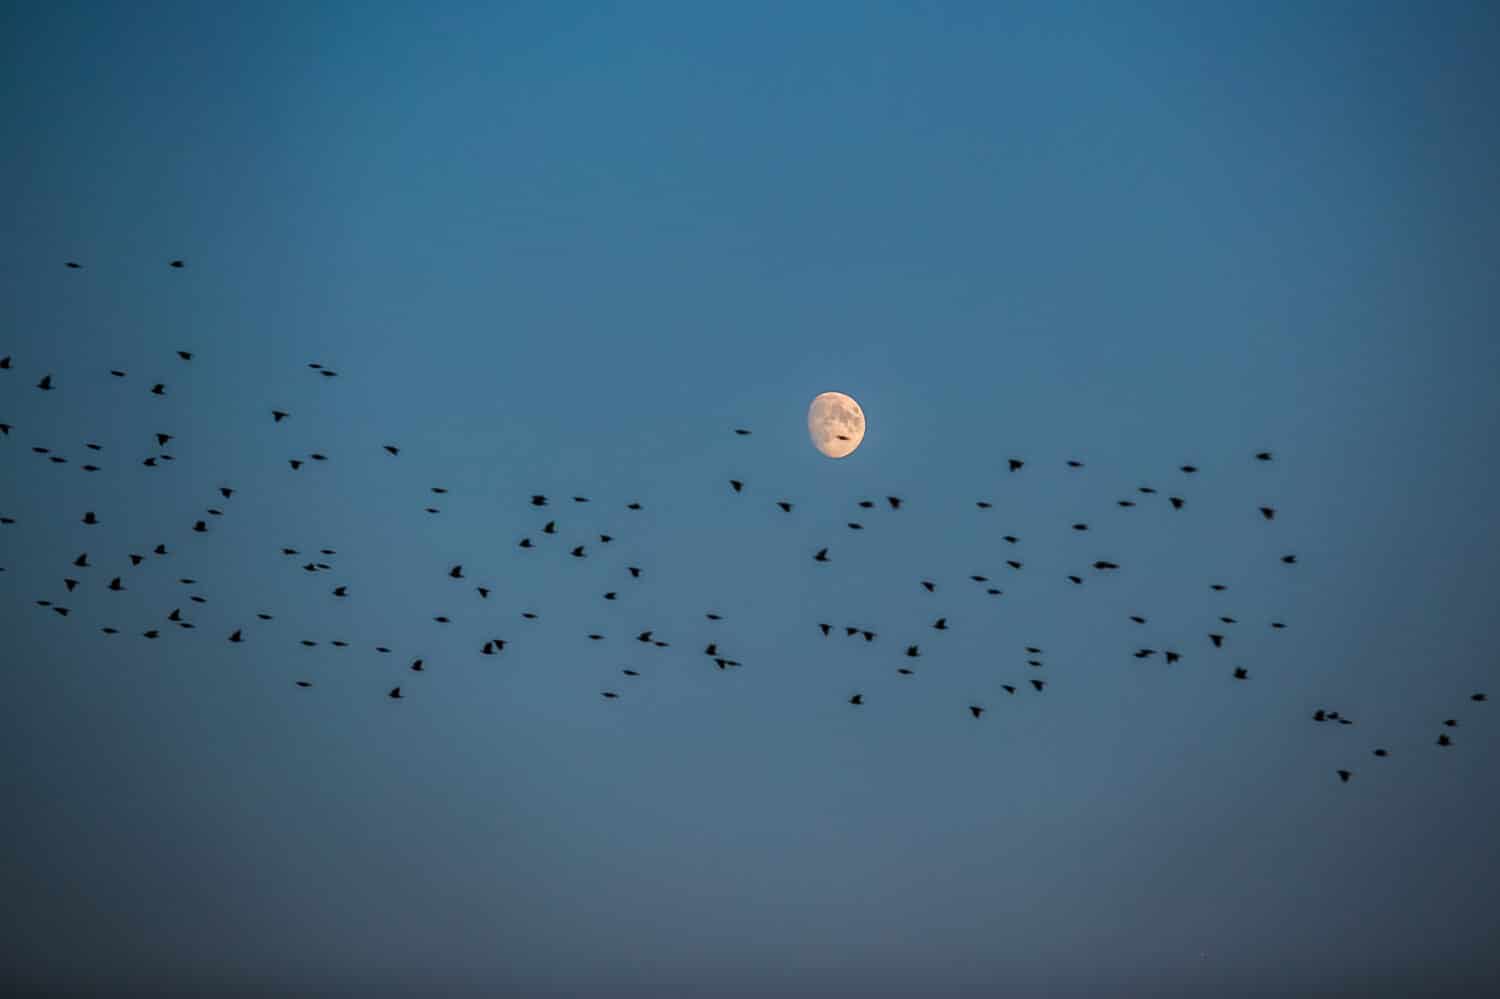 Vista notturna del gregge di storni che sorvolano una luna bianca, cielo blu scuro, migrazione degli uccelli durante l'autunno